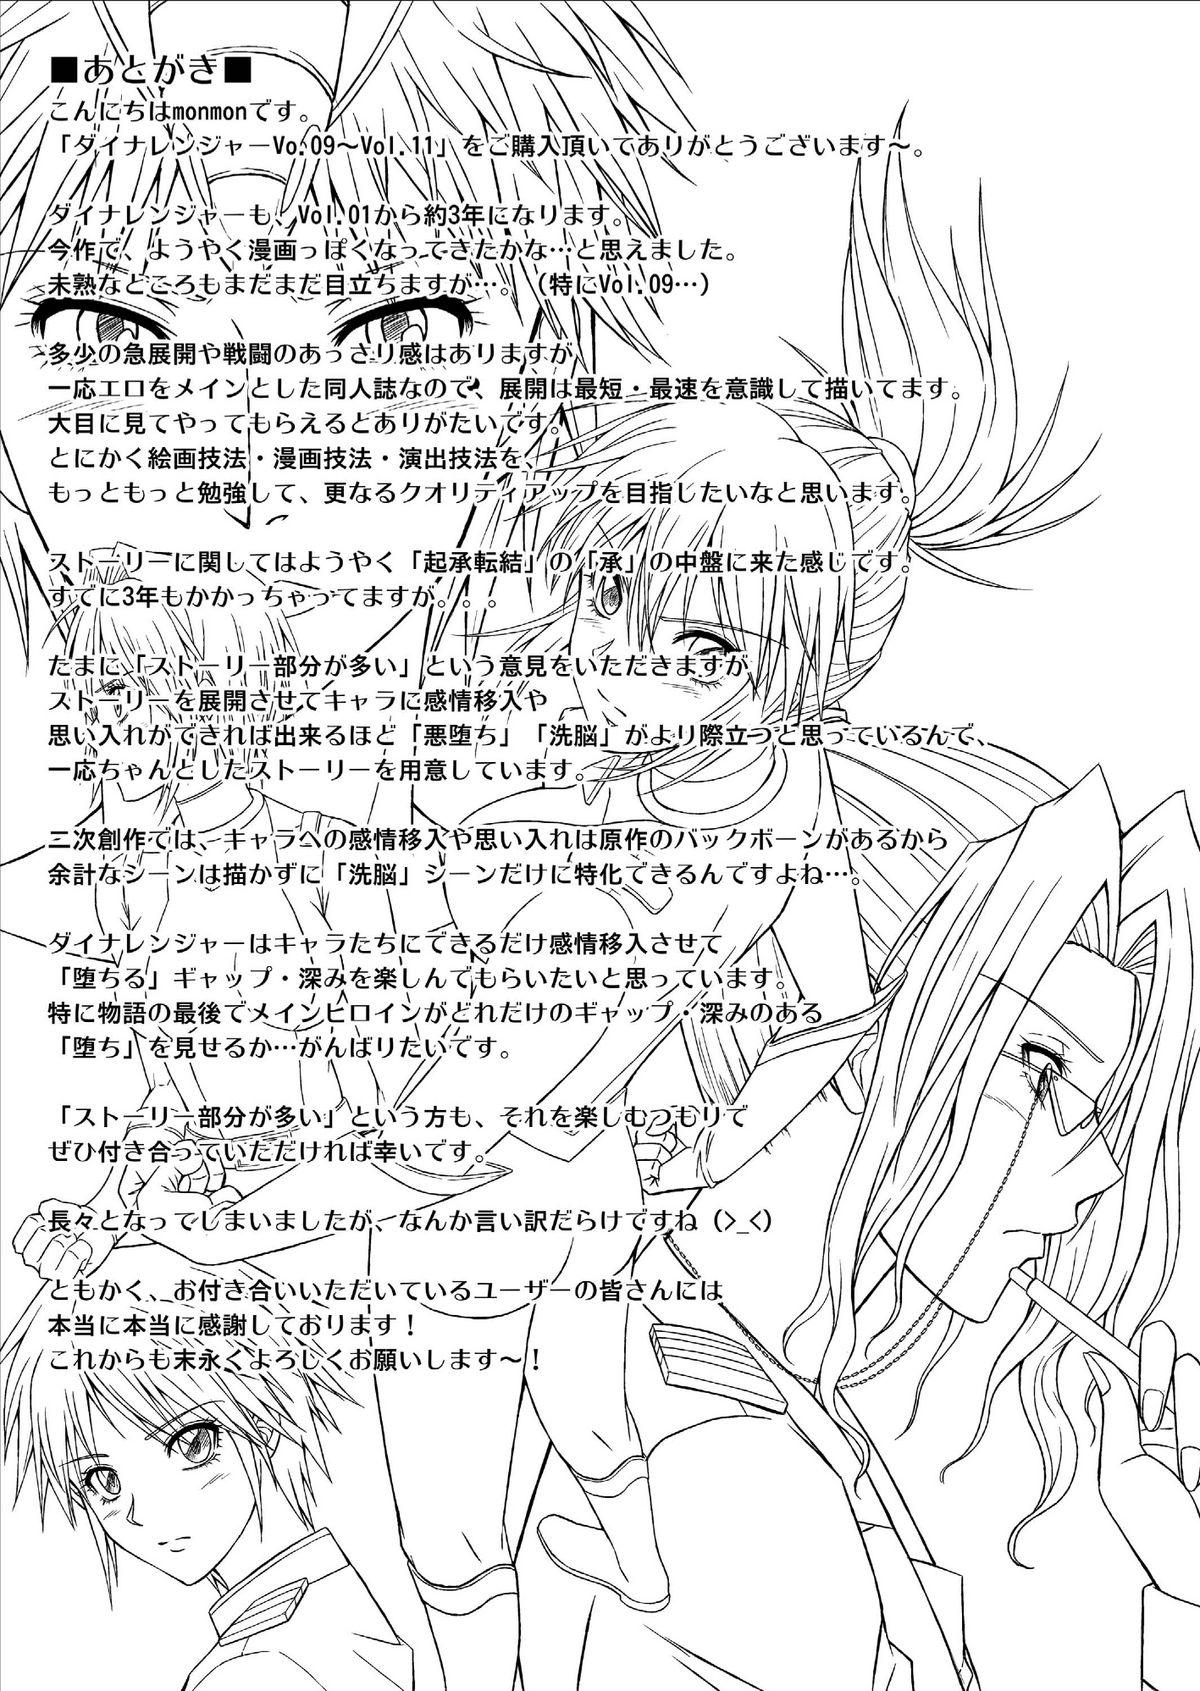 [MACXE'S (monmon)] Tokubousentai Dinaranger ~Heroine Kairaku Sennou Keikaku~ Vol. 9-11 90